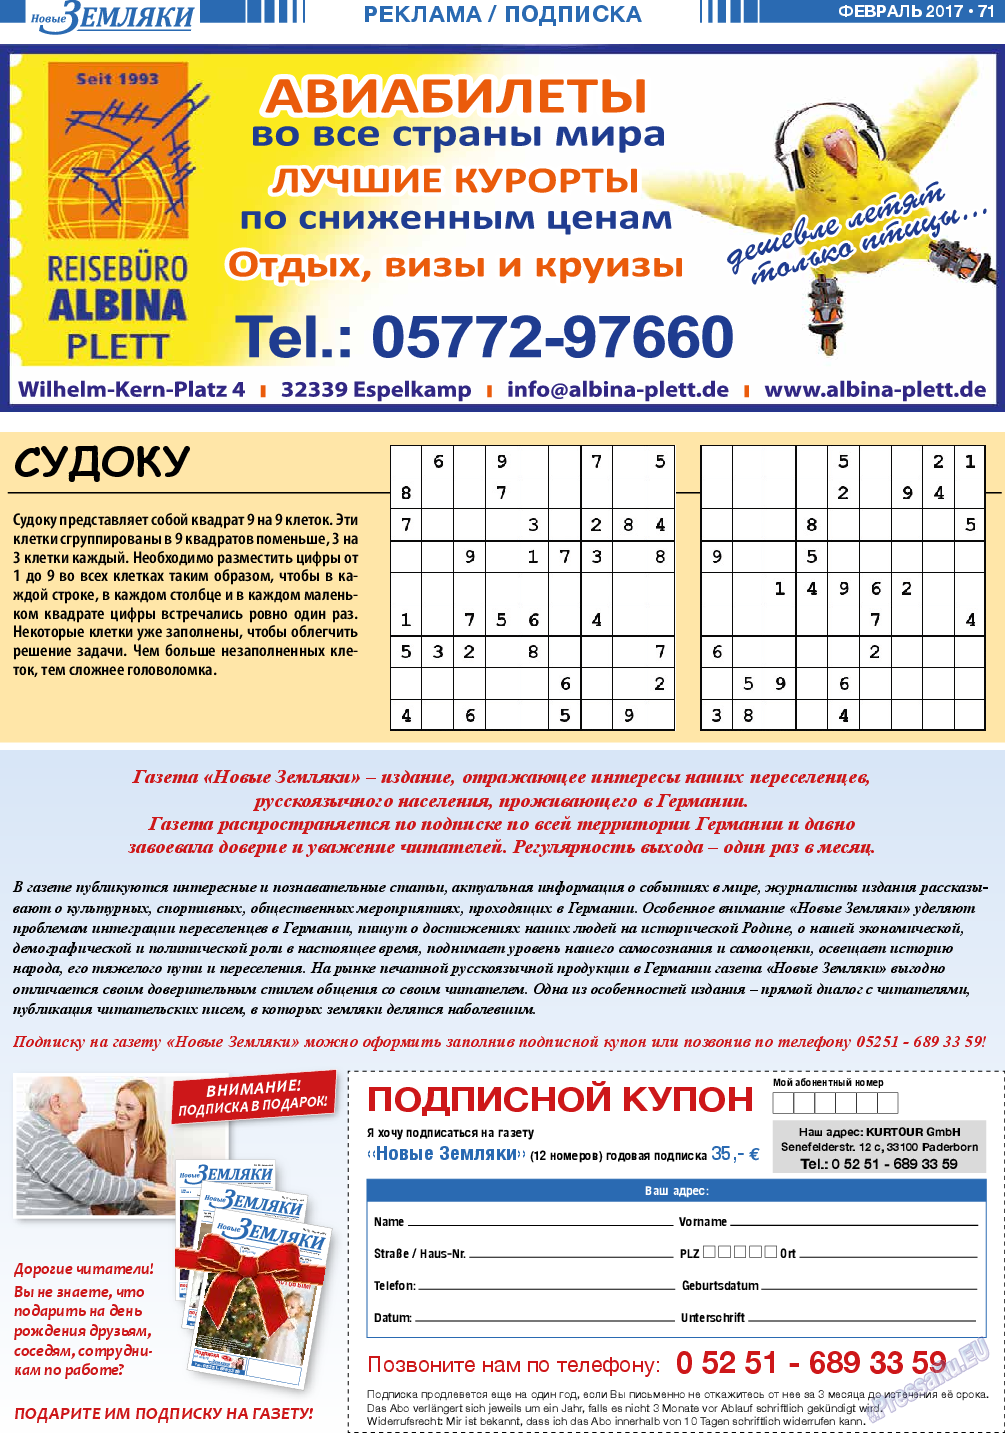 Новые Земляки, газета. 2017 №2 стр.71